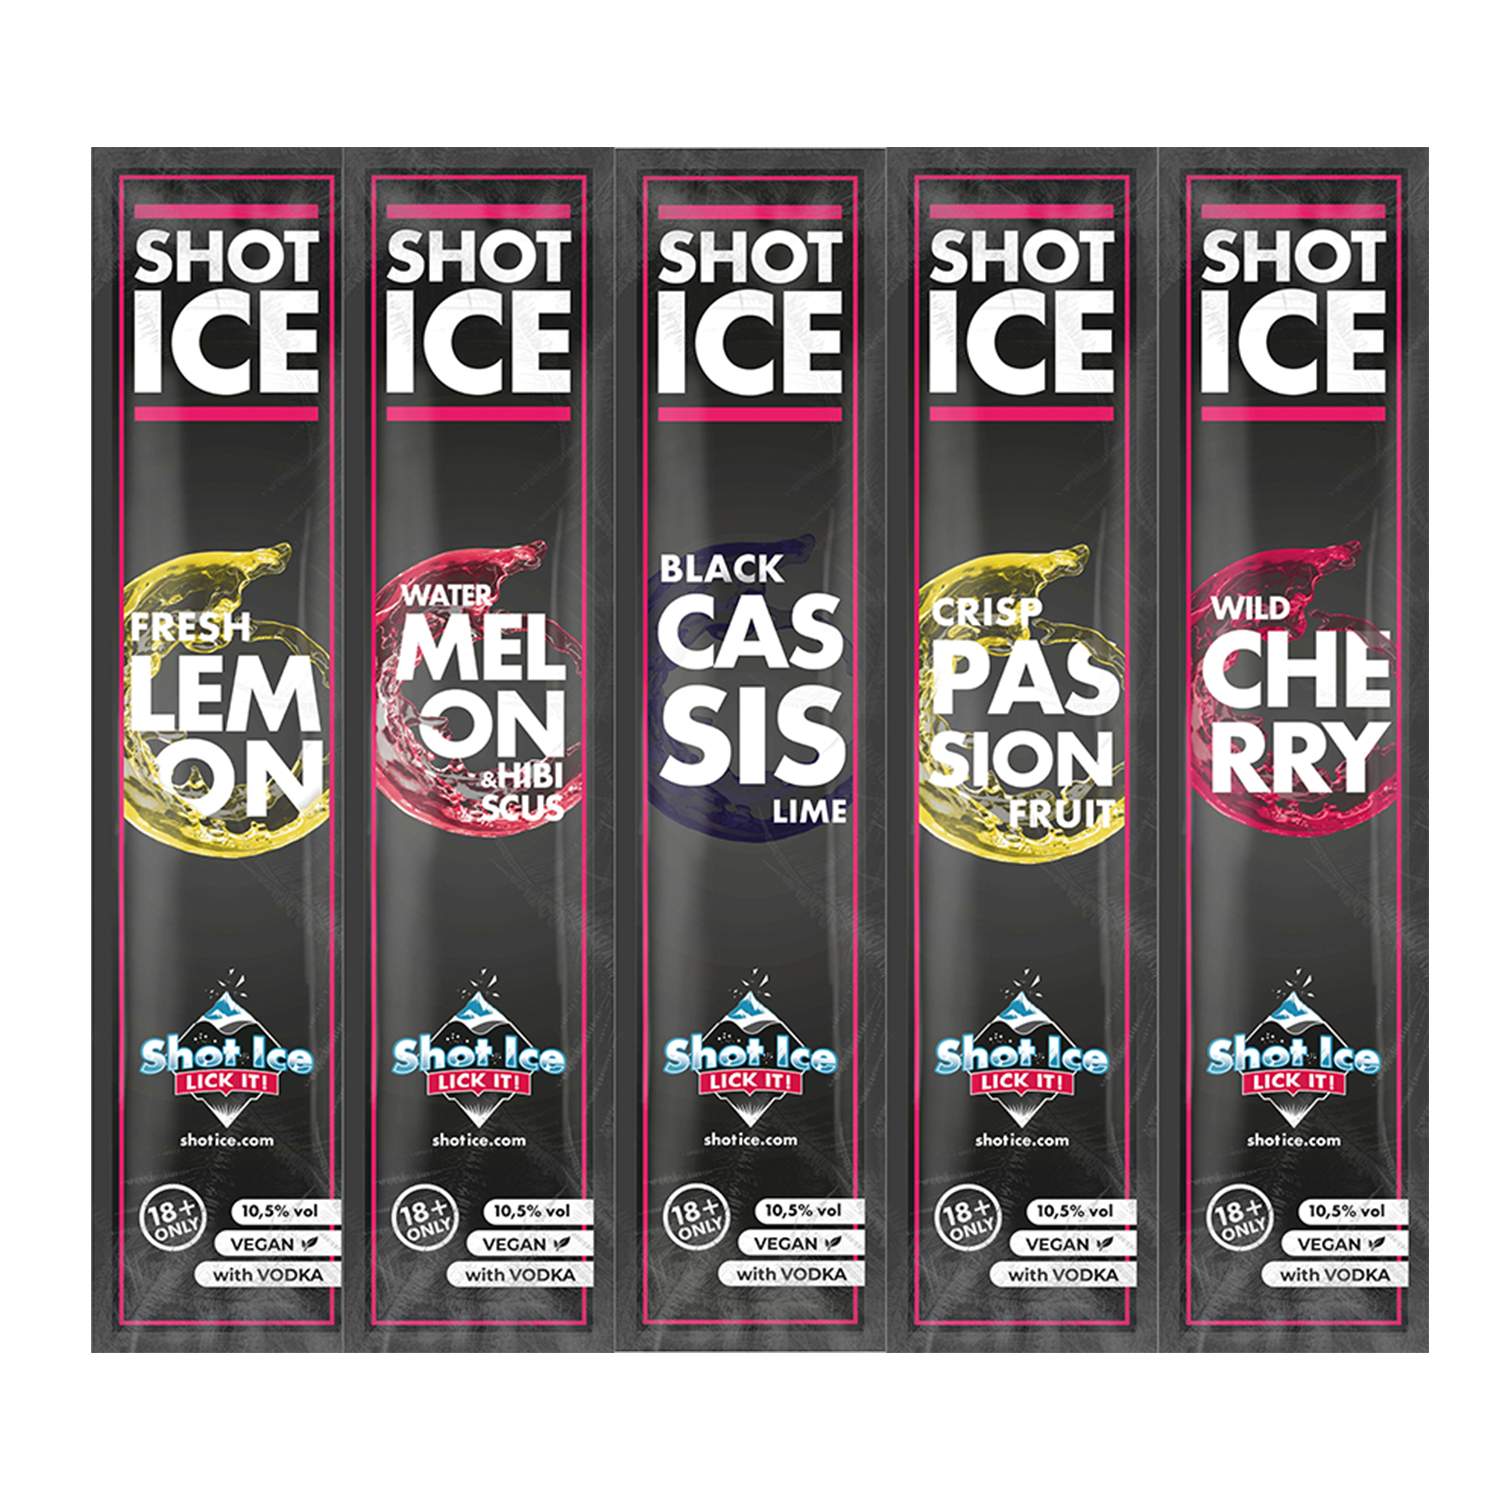 Shot Ice Mix-Paket 5 Sorten "Juicy Gems Collection" - Wassereis mit 10,5% Alk. - Ab 18 Jahren